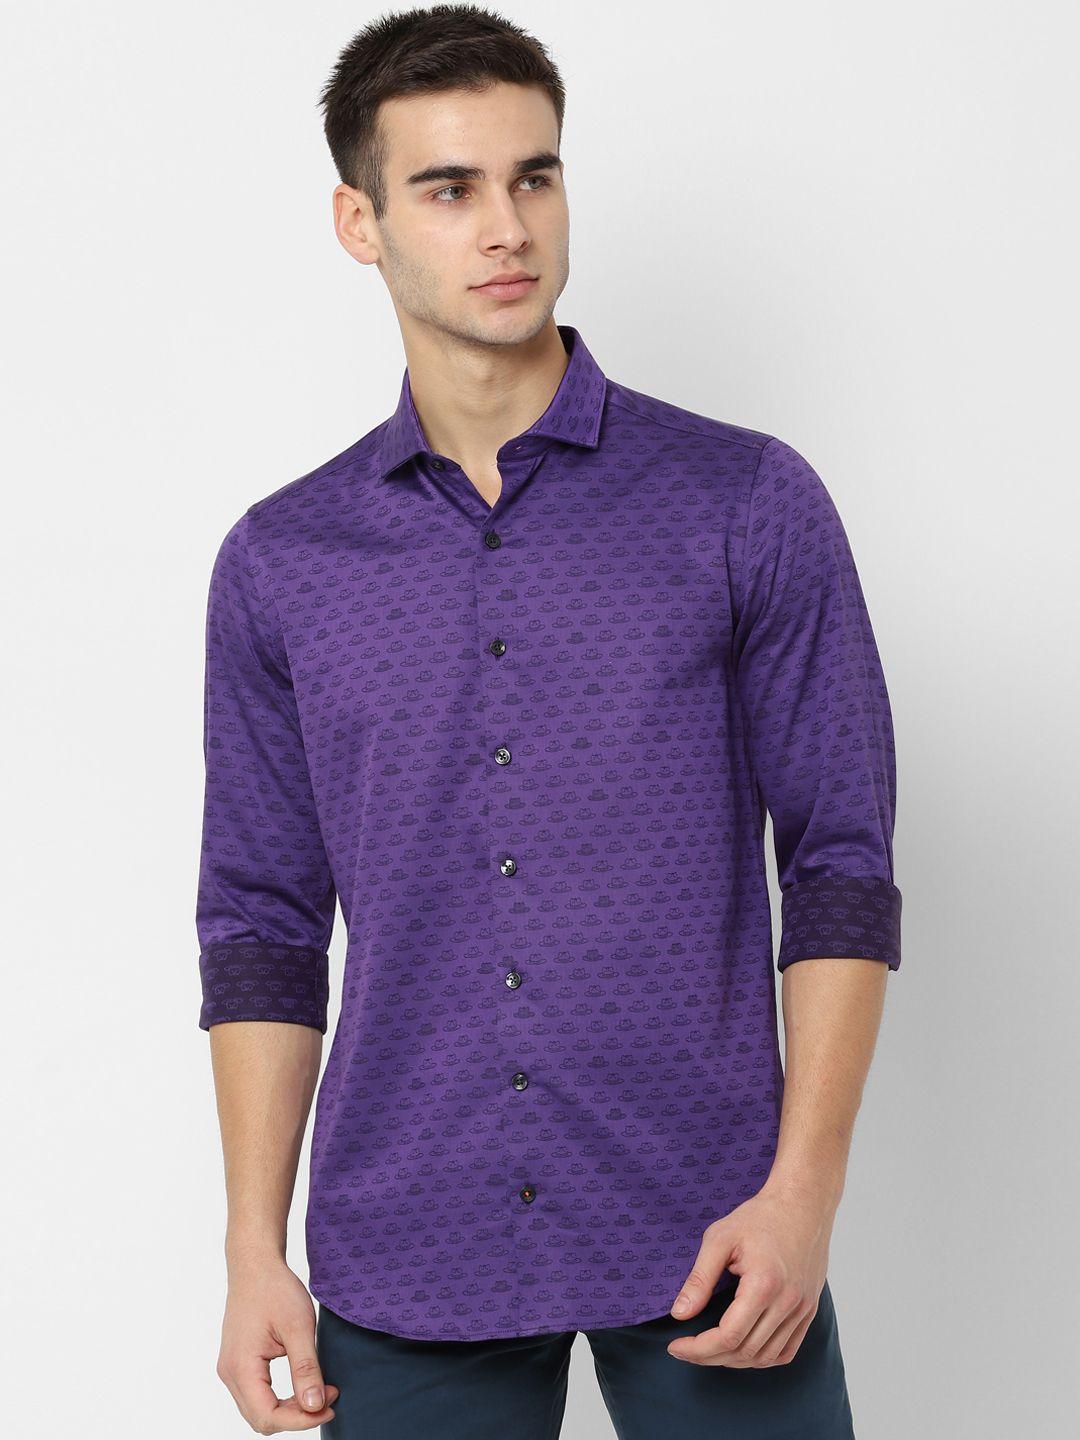 simon carter london men purple slim fit printed casual shirt